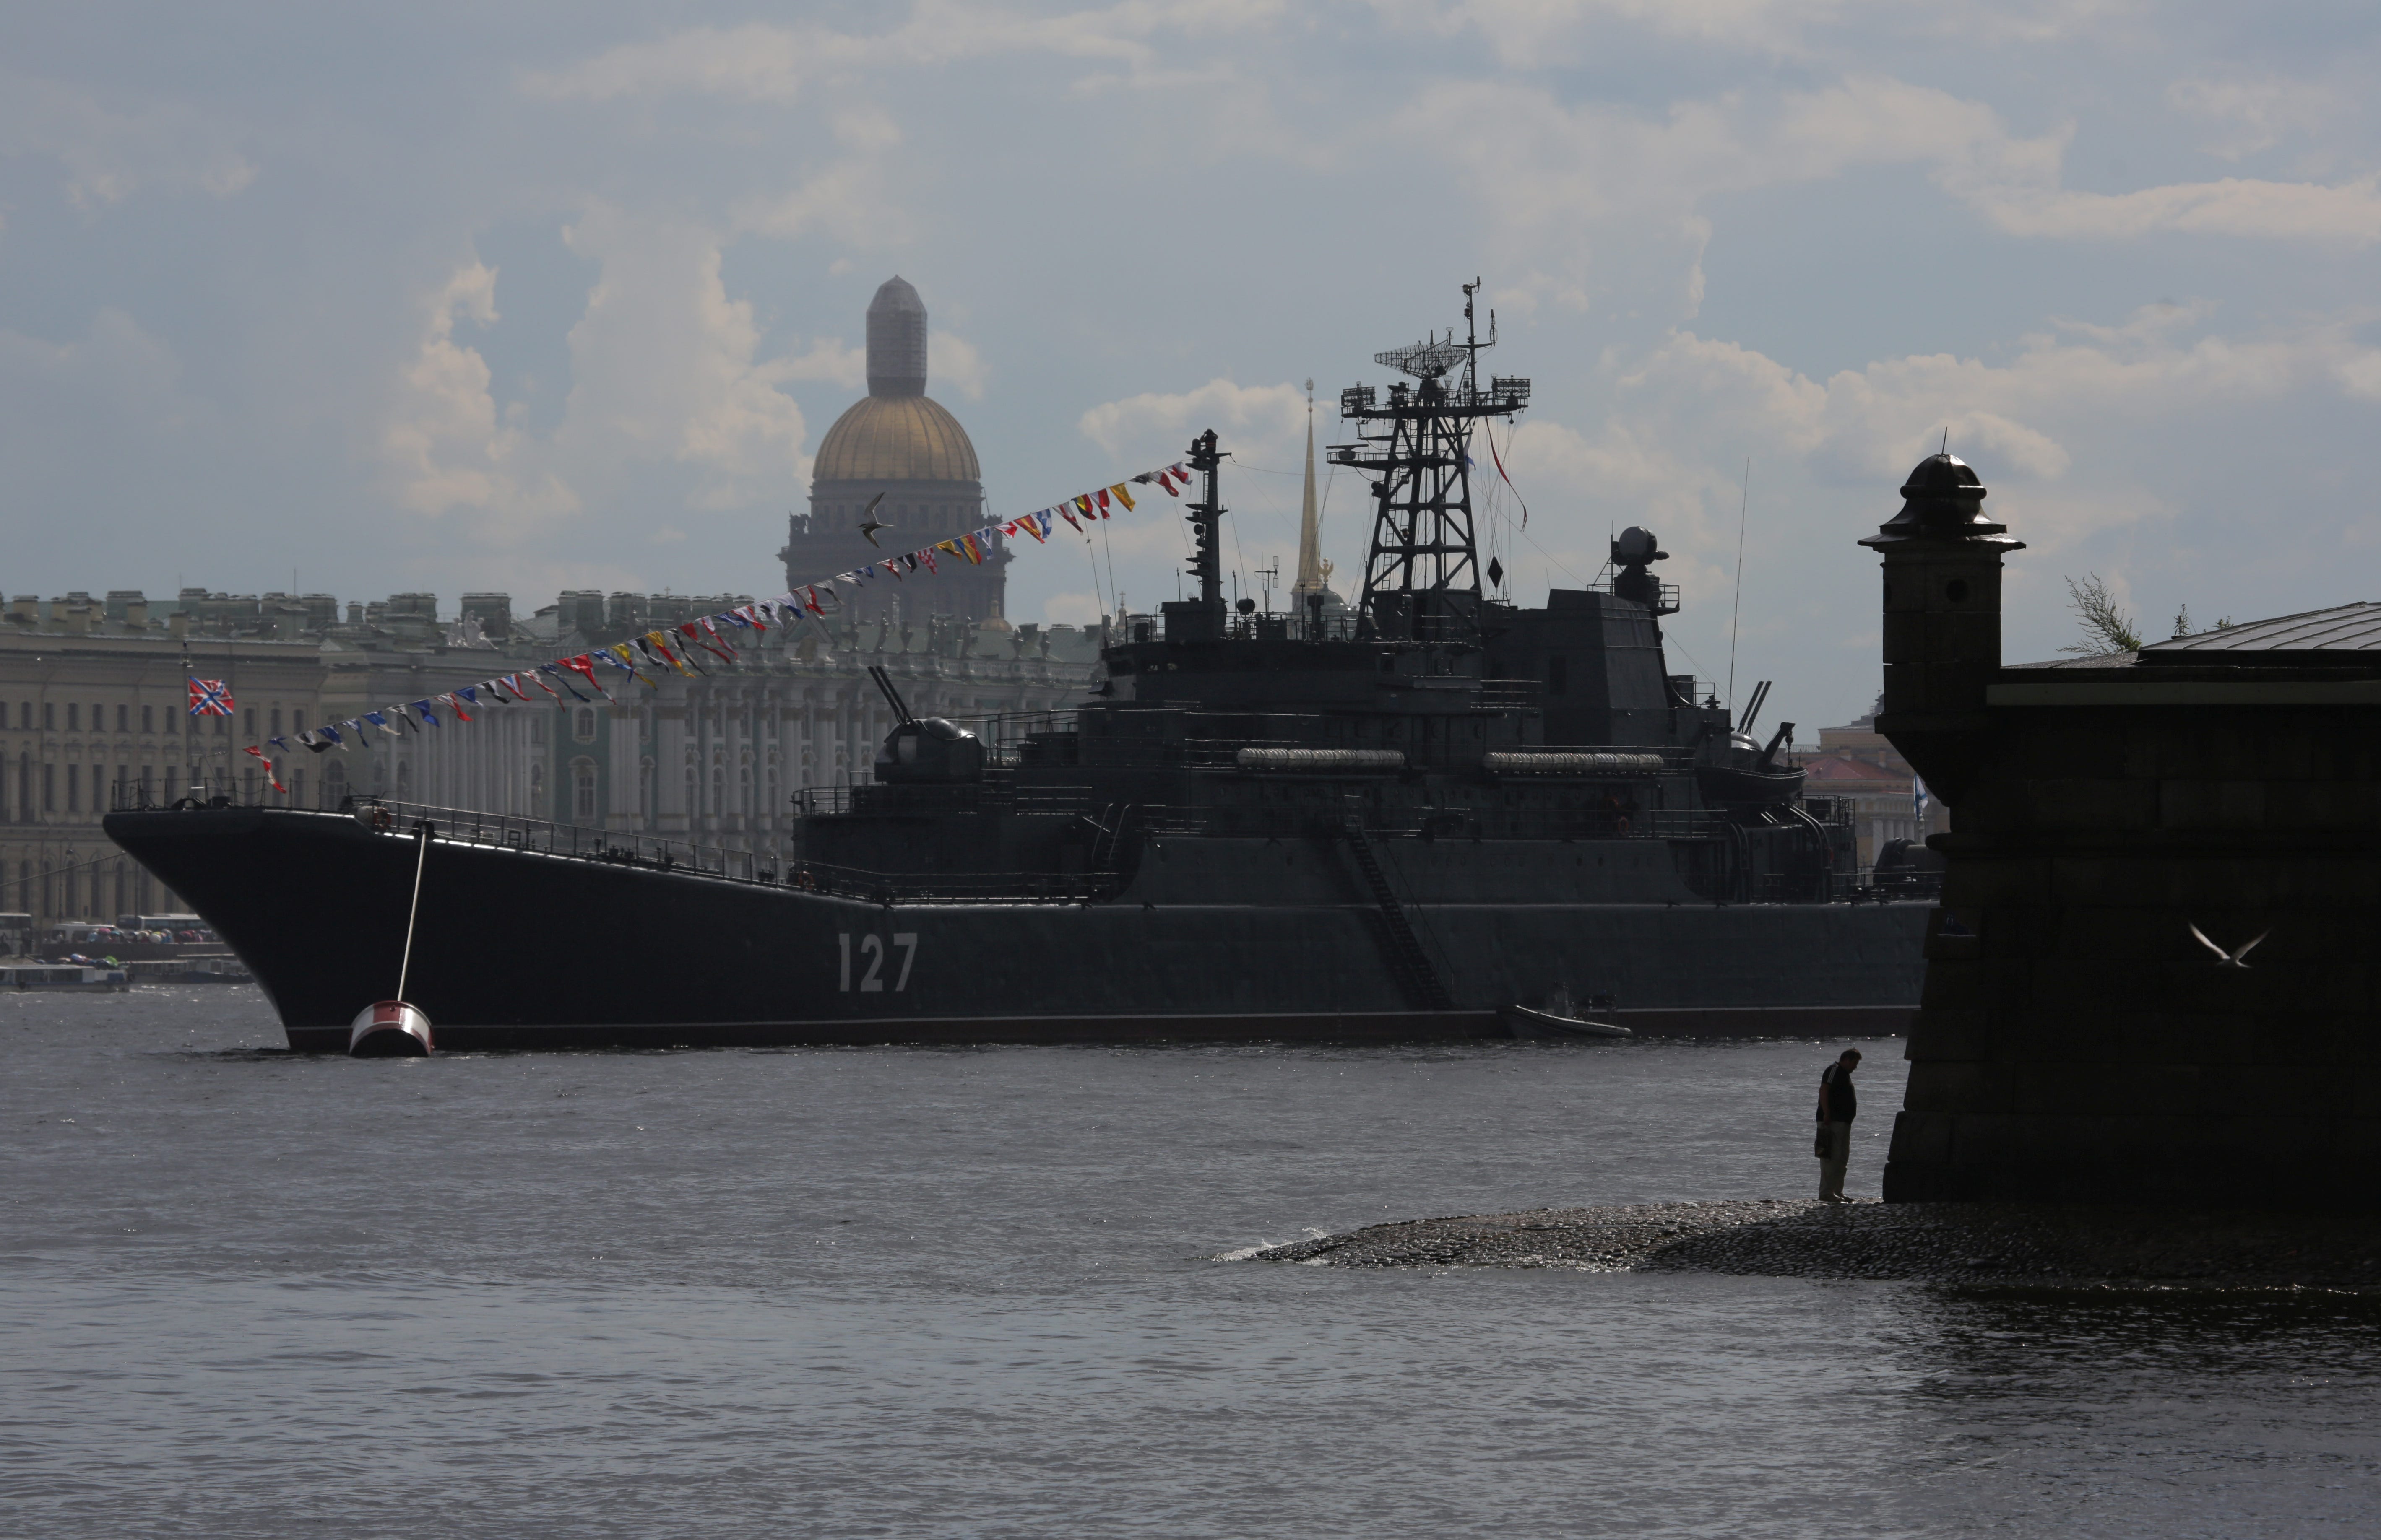 Das große Landungsschiff Minsk der russischen Marine ist in der Newa zu sehen, mit der Isaakskathedrale und dem Eremitage-Museum im Hintergrund in St. Petersburg, Russland